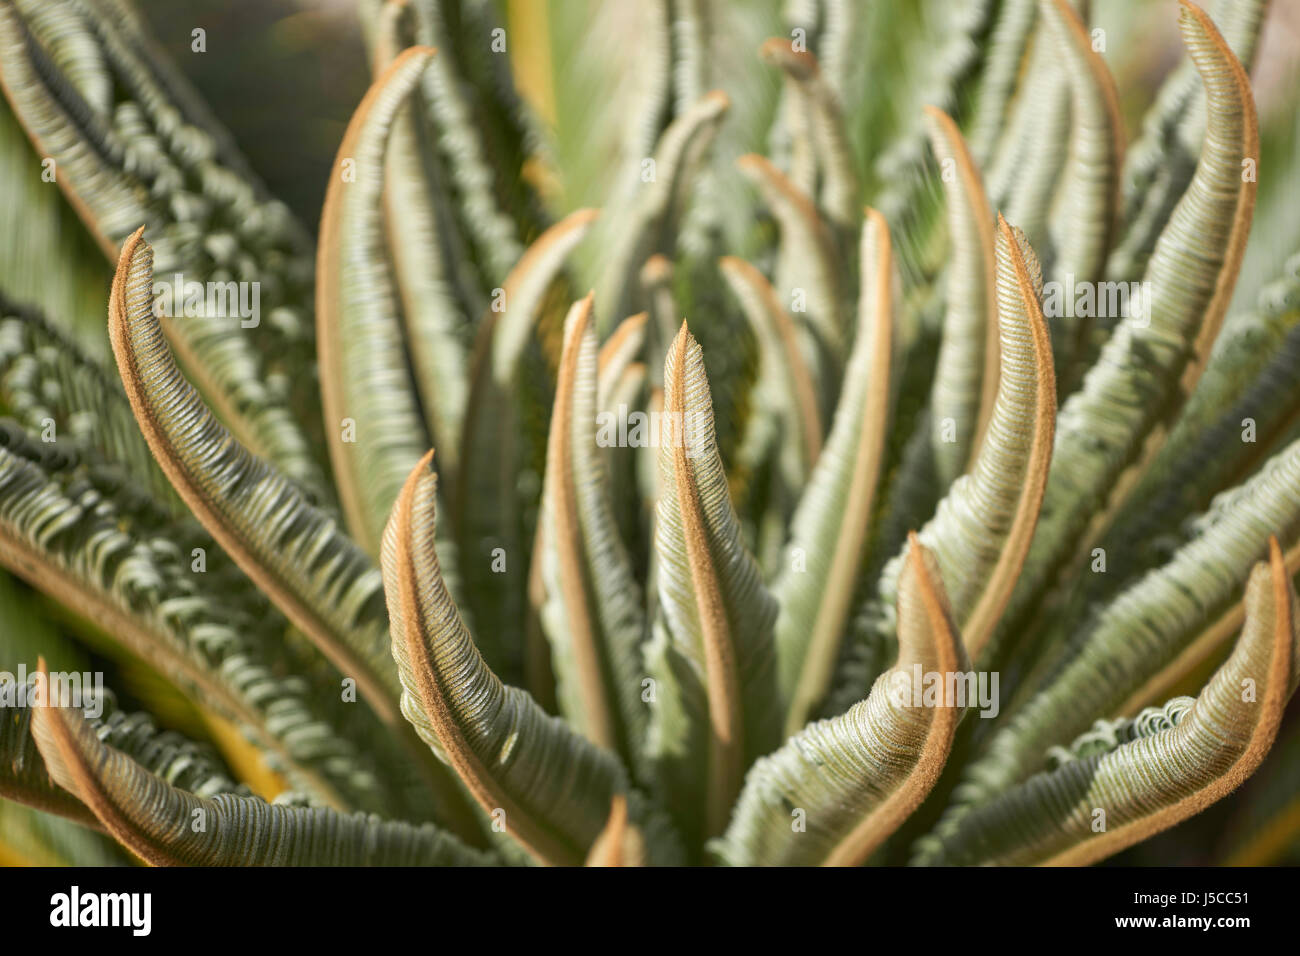 Imagen de fondo con las nuevas hojas de un bosque tropical de cícadas (sago) Planta de sol Foto de stock